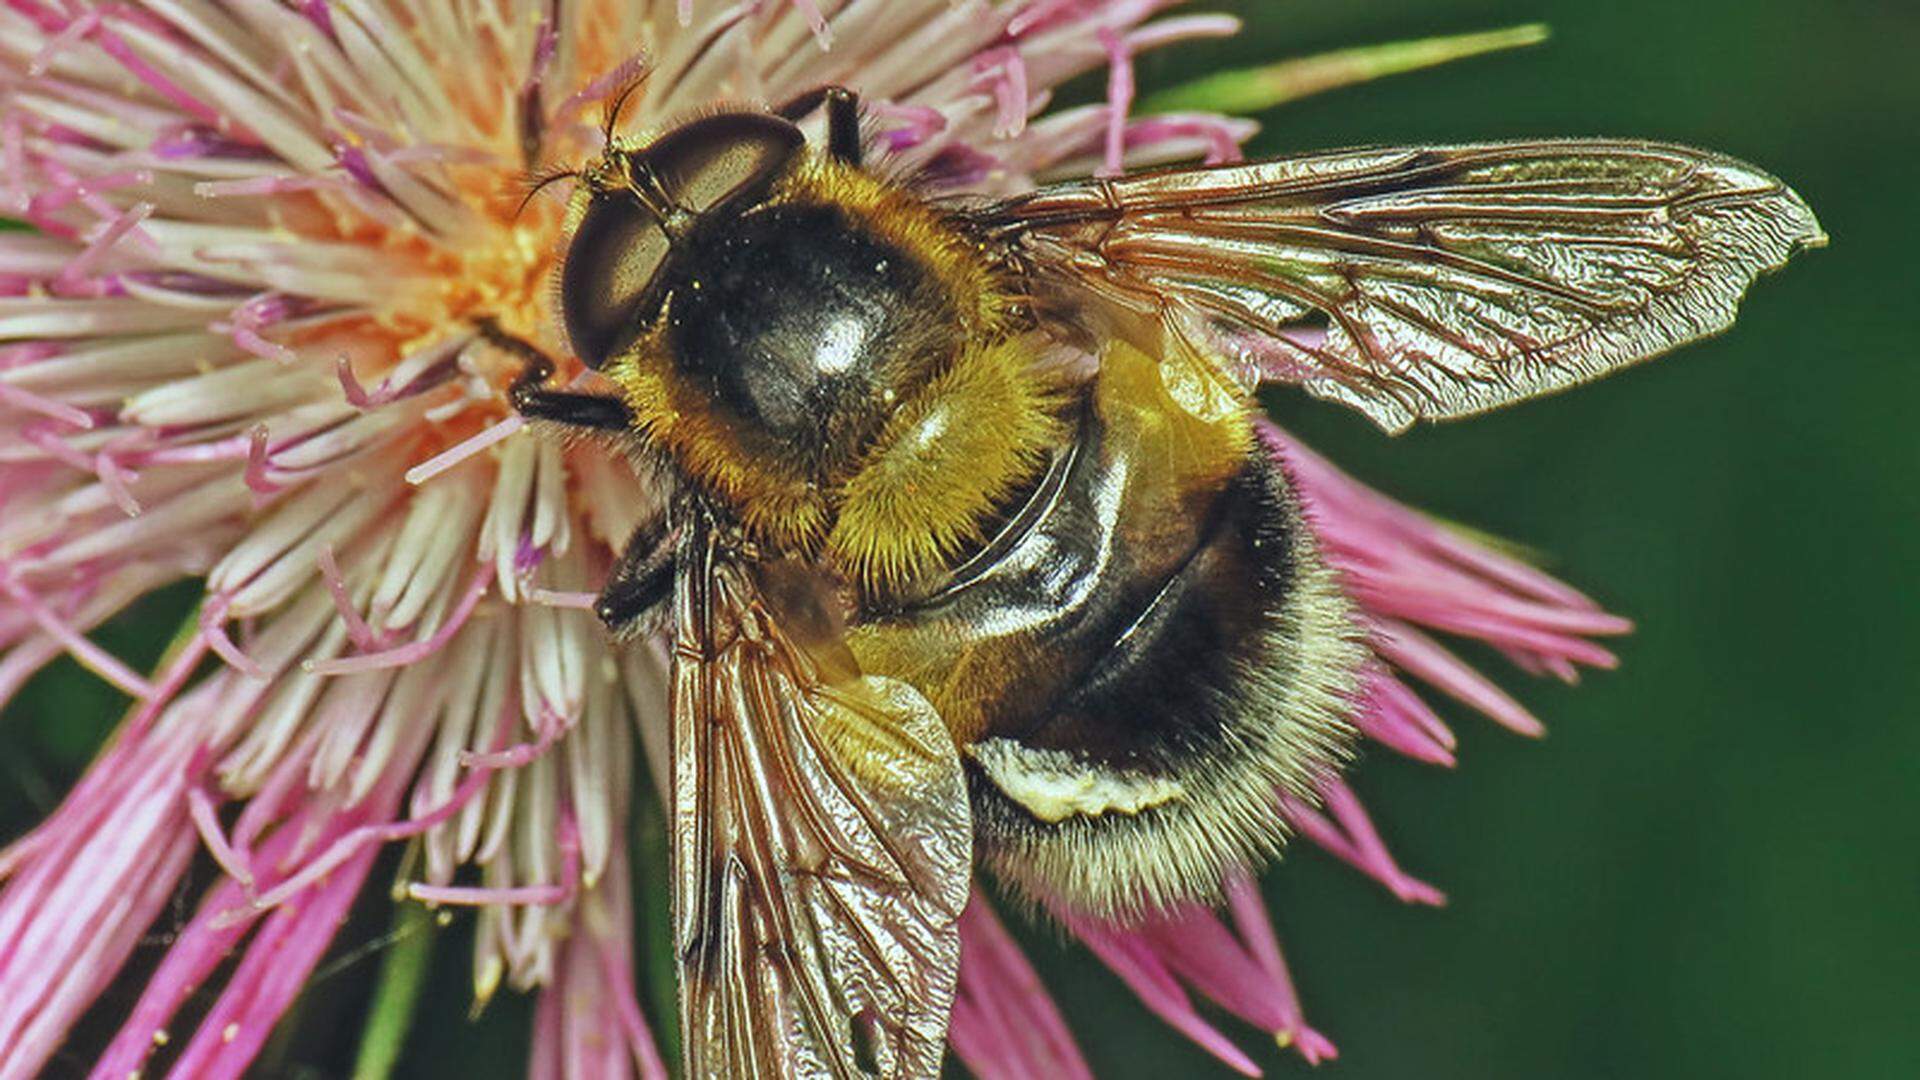 Quand un insecte mange du nectar, il touche l’organe mâle de la fleur, ce qui le couvre de pollen. Quand cet insecte va dans une autre fleur, il a une bonne chance de déposer du pollen sur l’organe femelle de celle-ci. C’est la pollinisation.